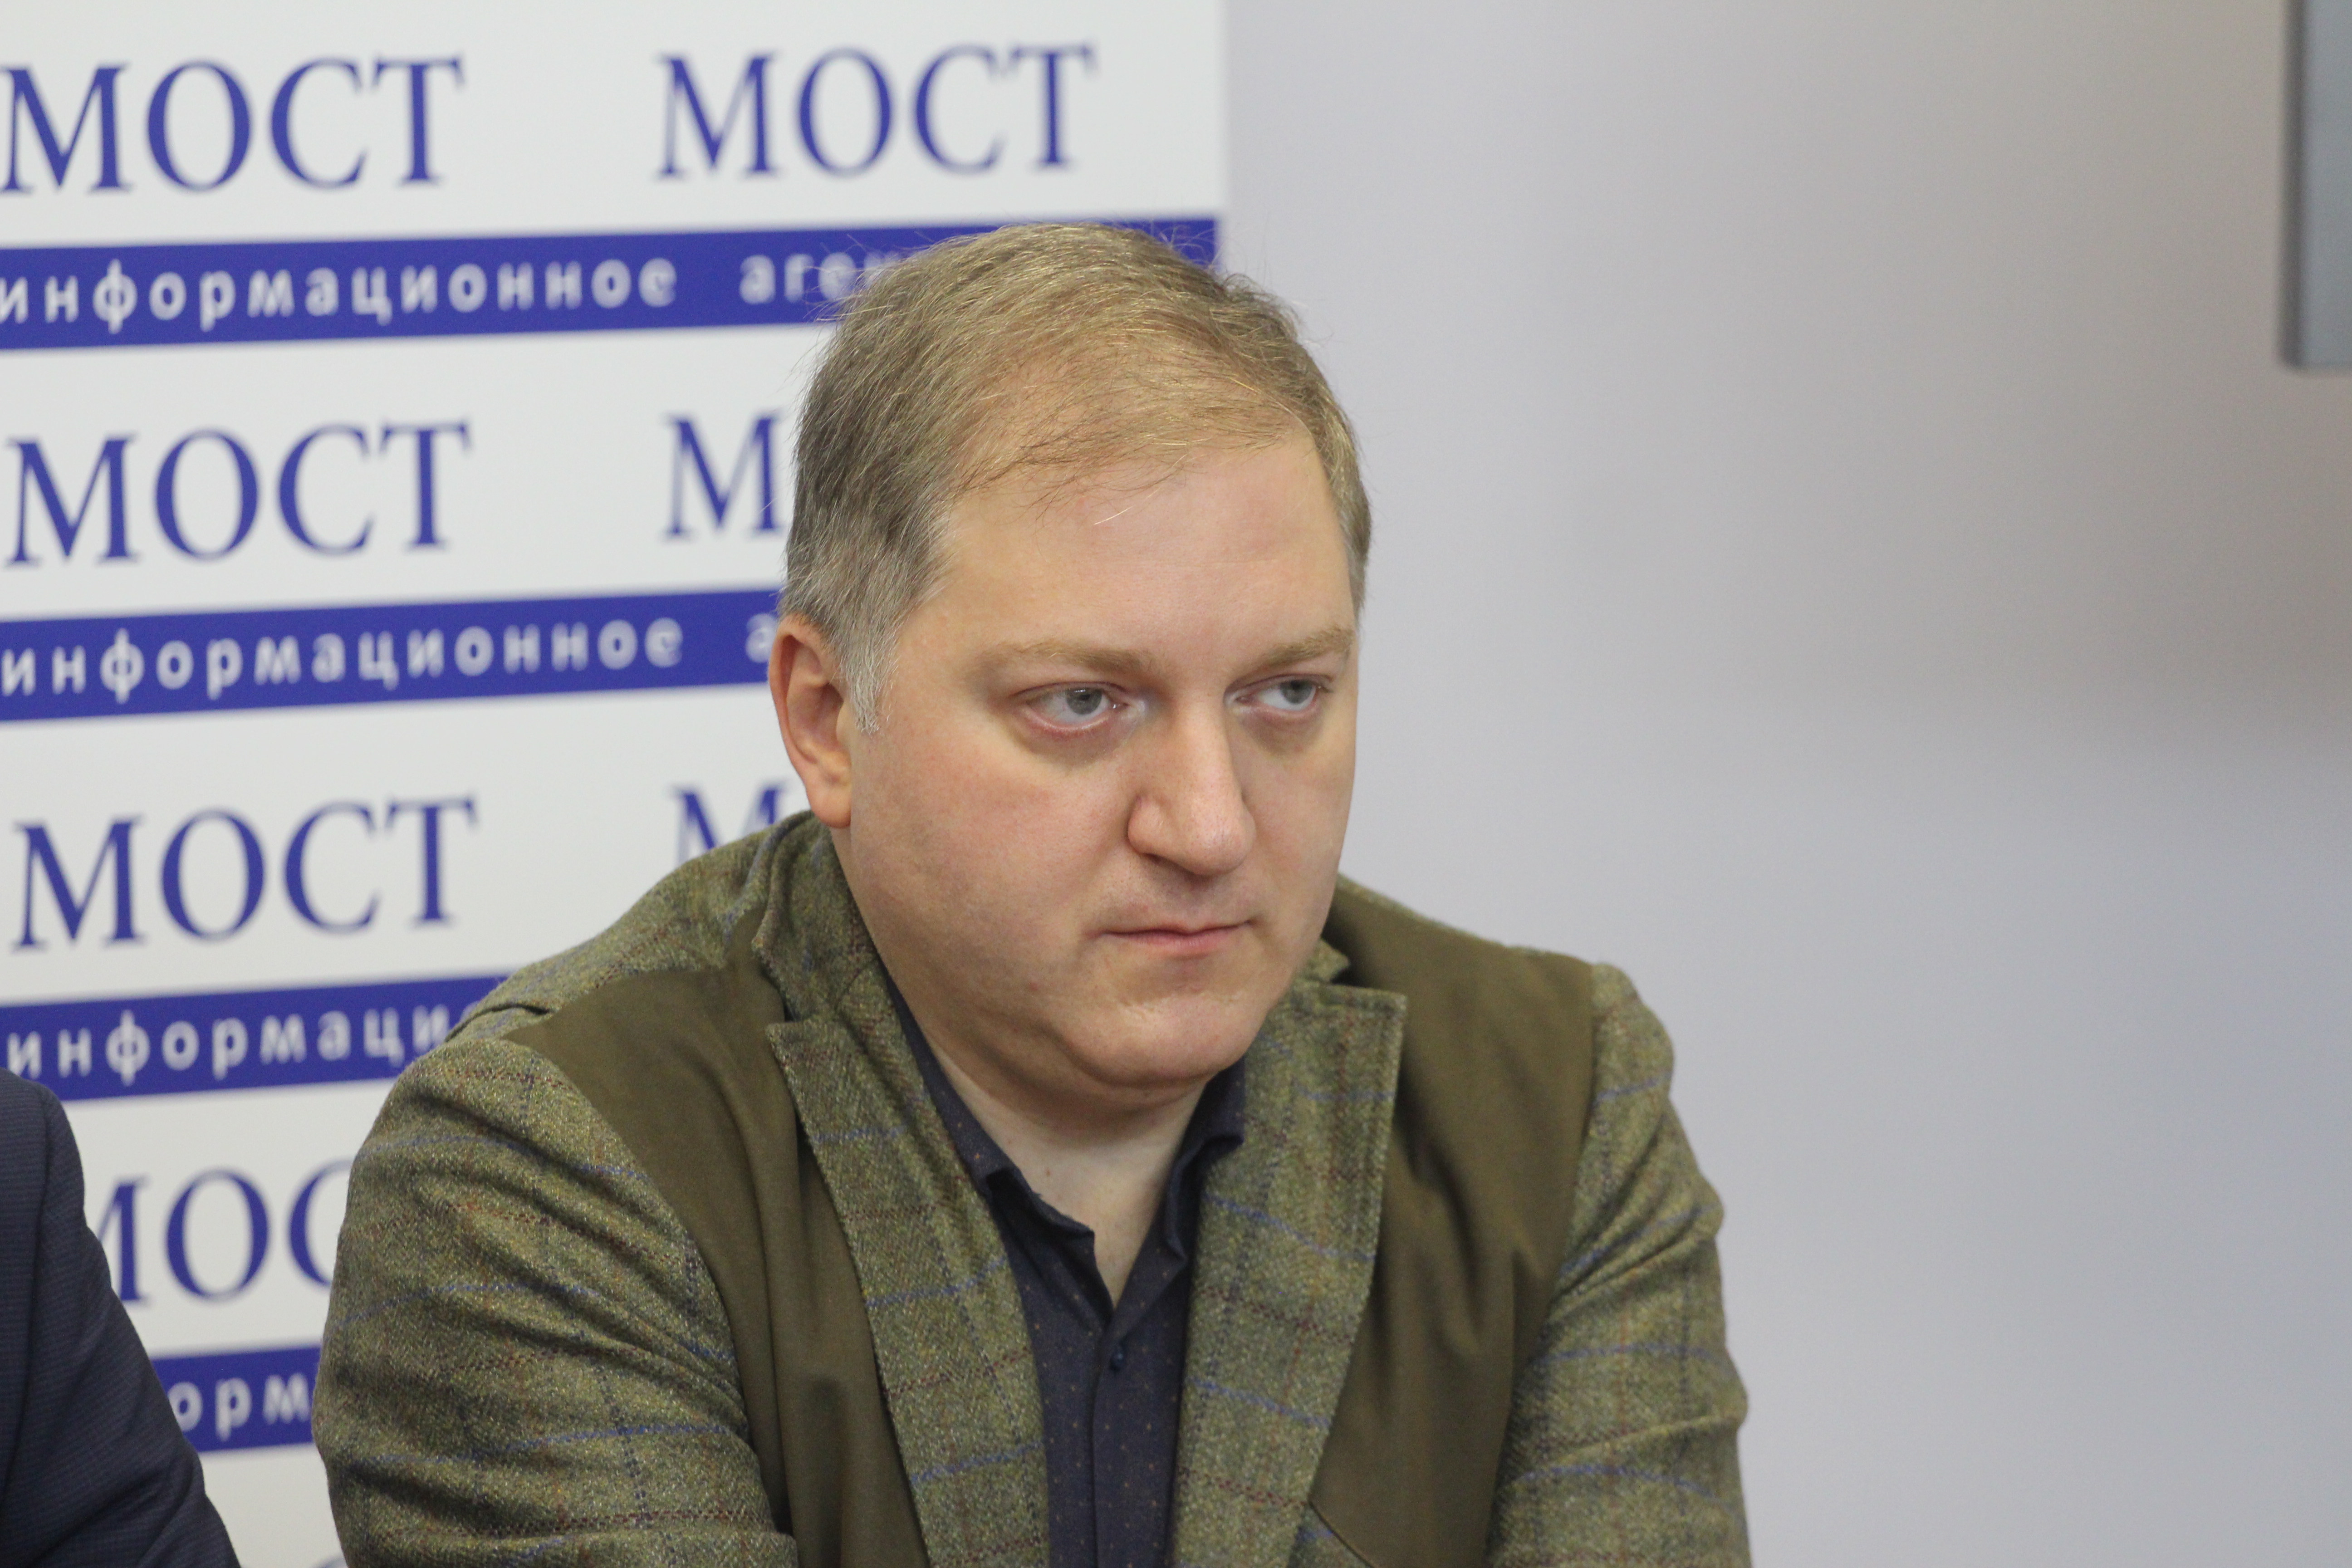 Олег Волошин: “Будет проведена проверка источников финансирования “опроса Зеленского”